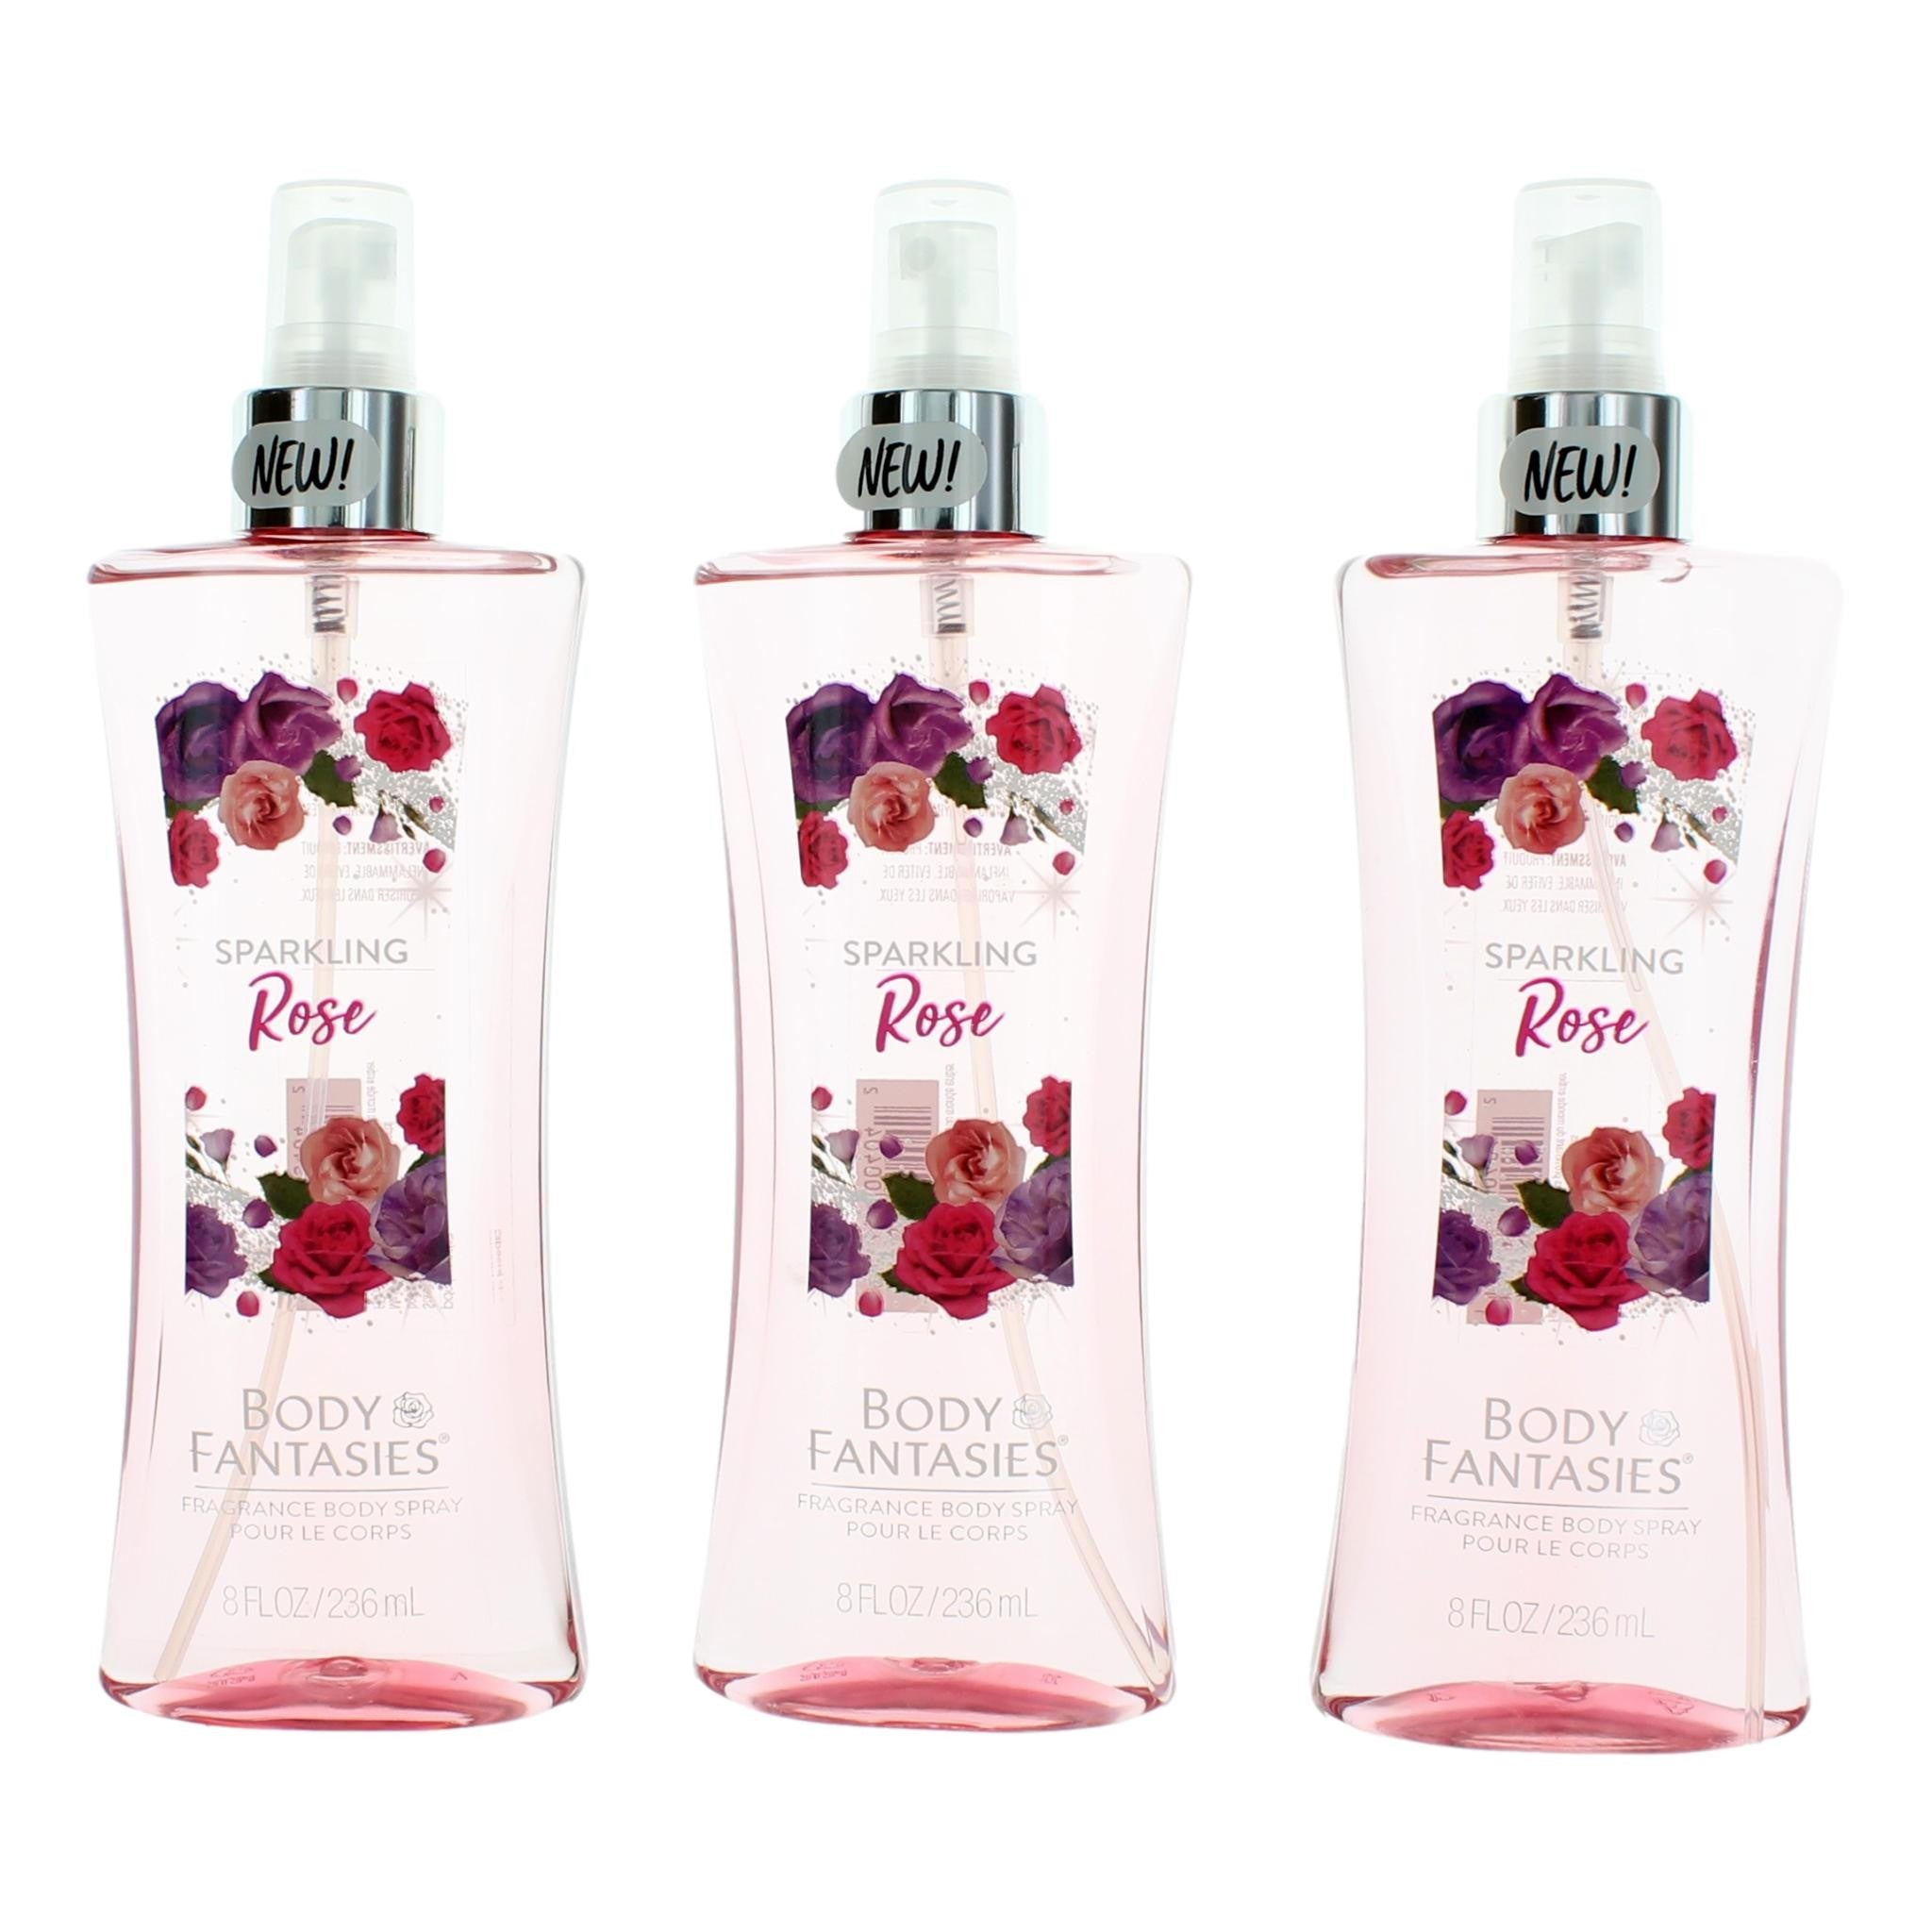 Bottle of Sparkling Roses by Body Fantasies, 3 Pack 8 oz Fragrance Body Spray for Women